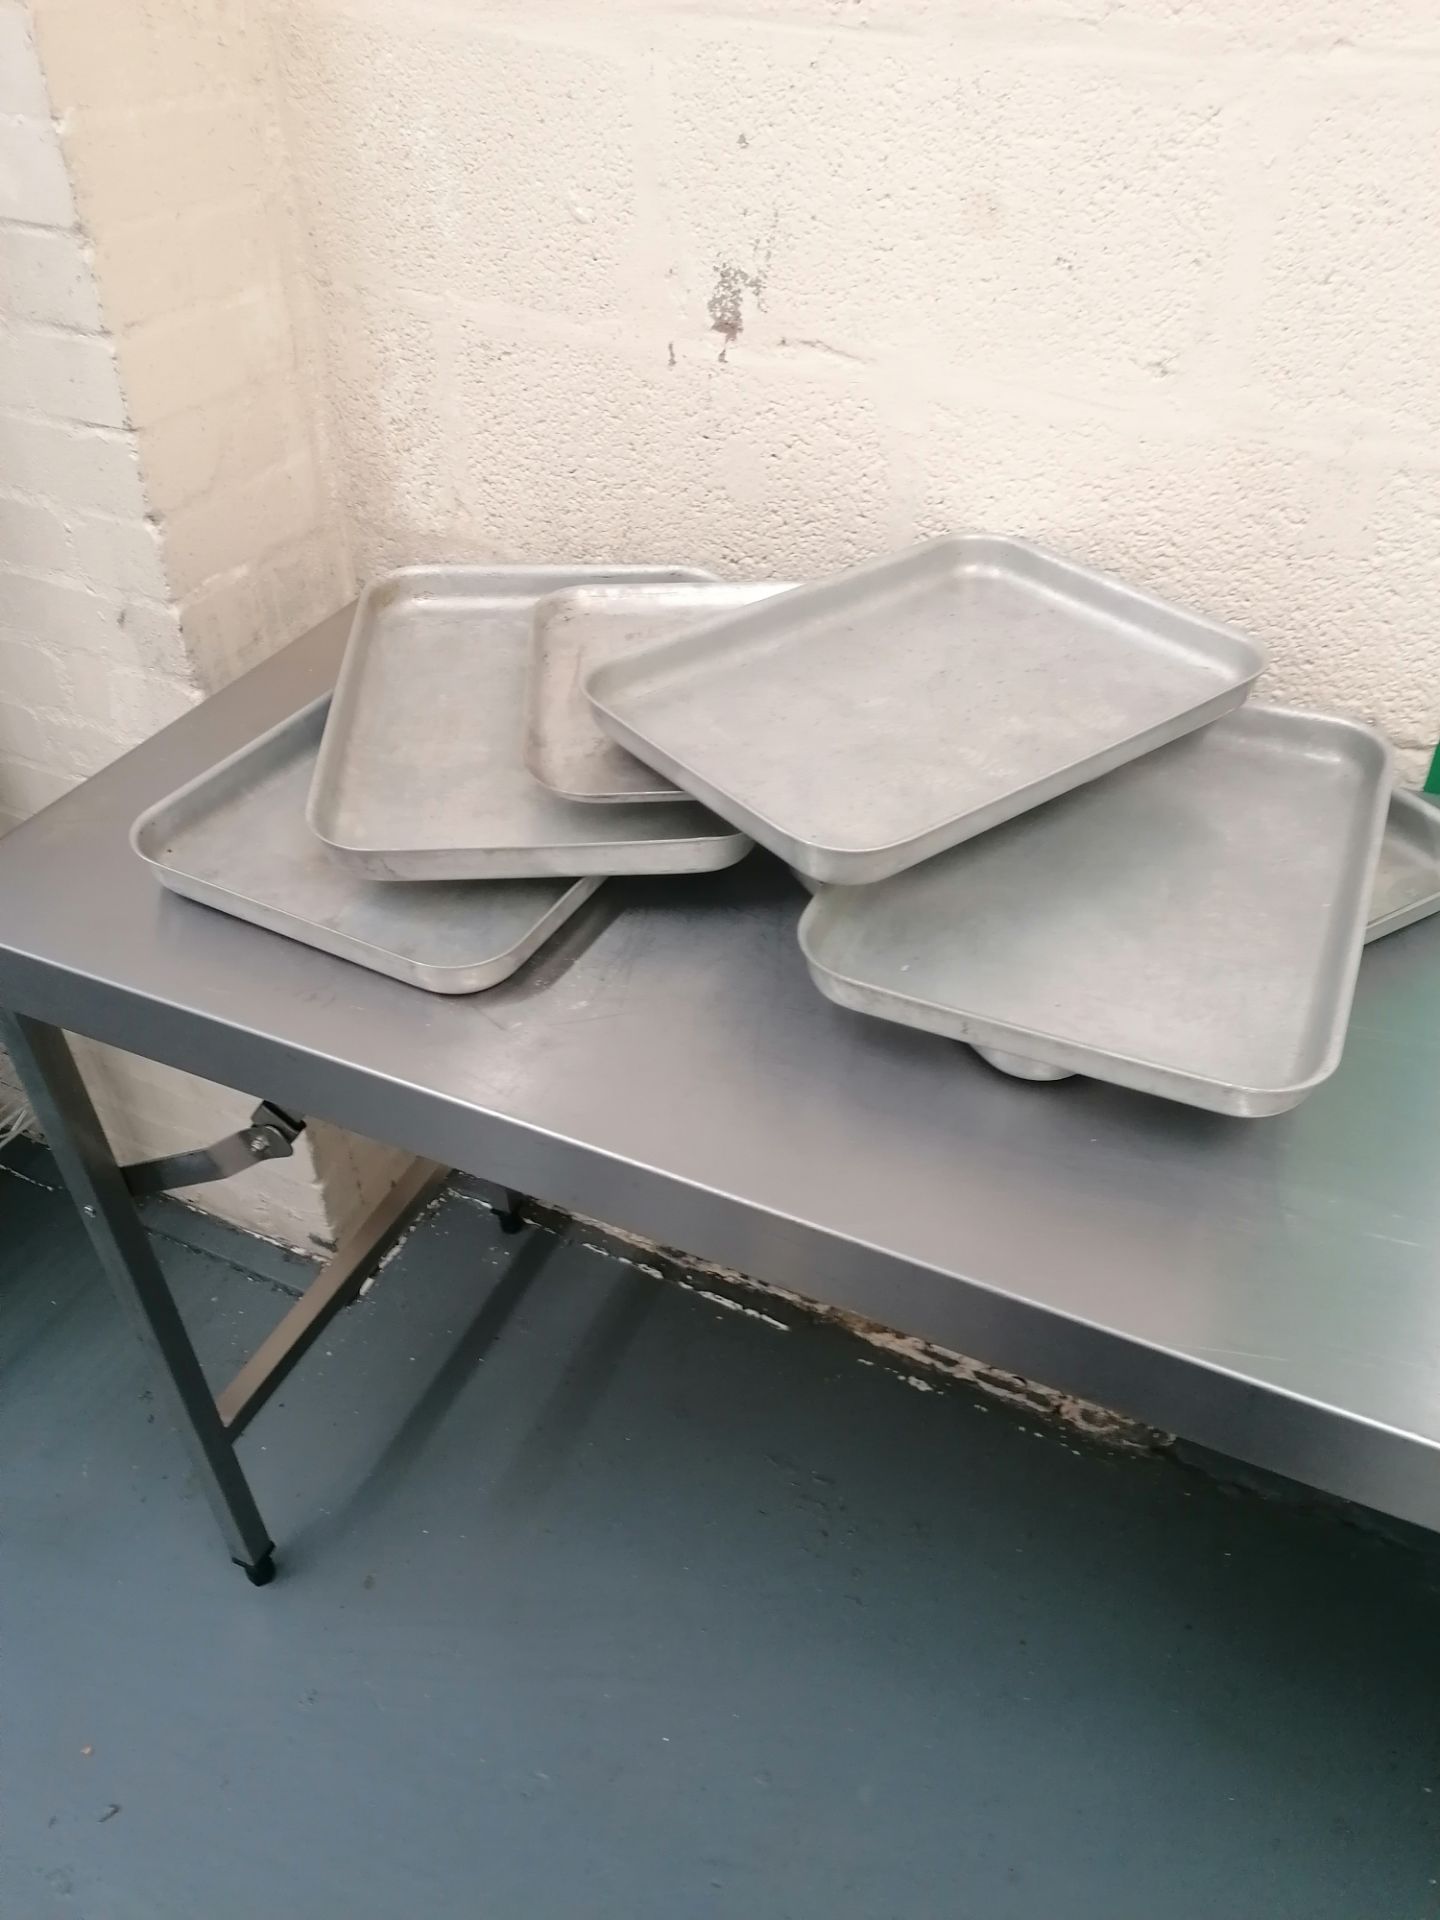 6 x Aluminium baking trays